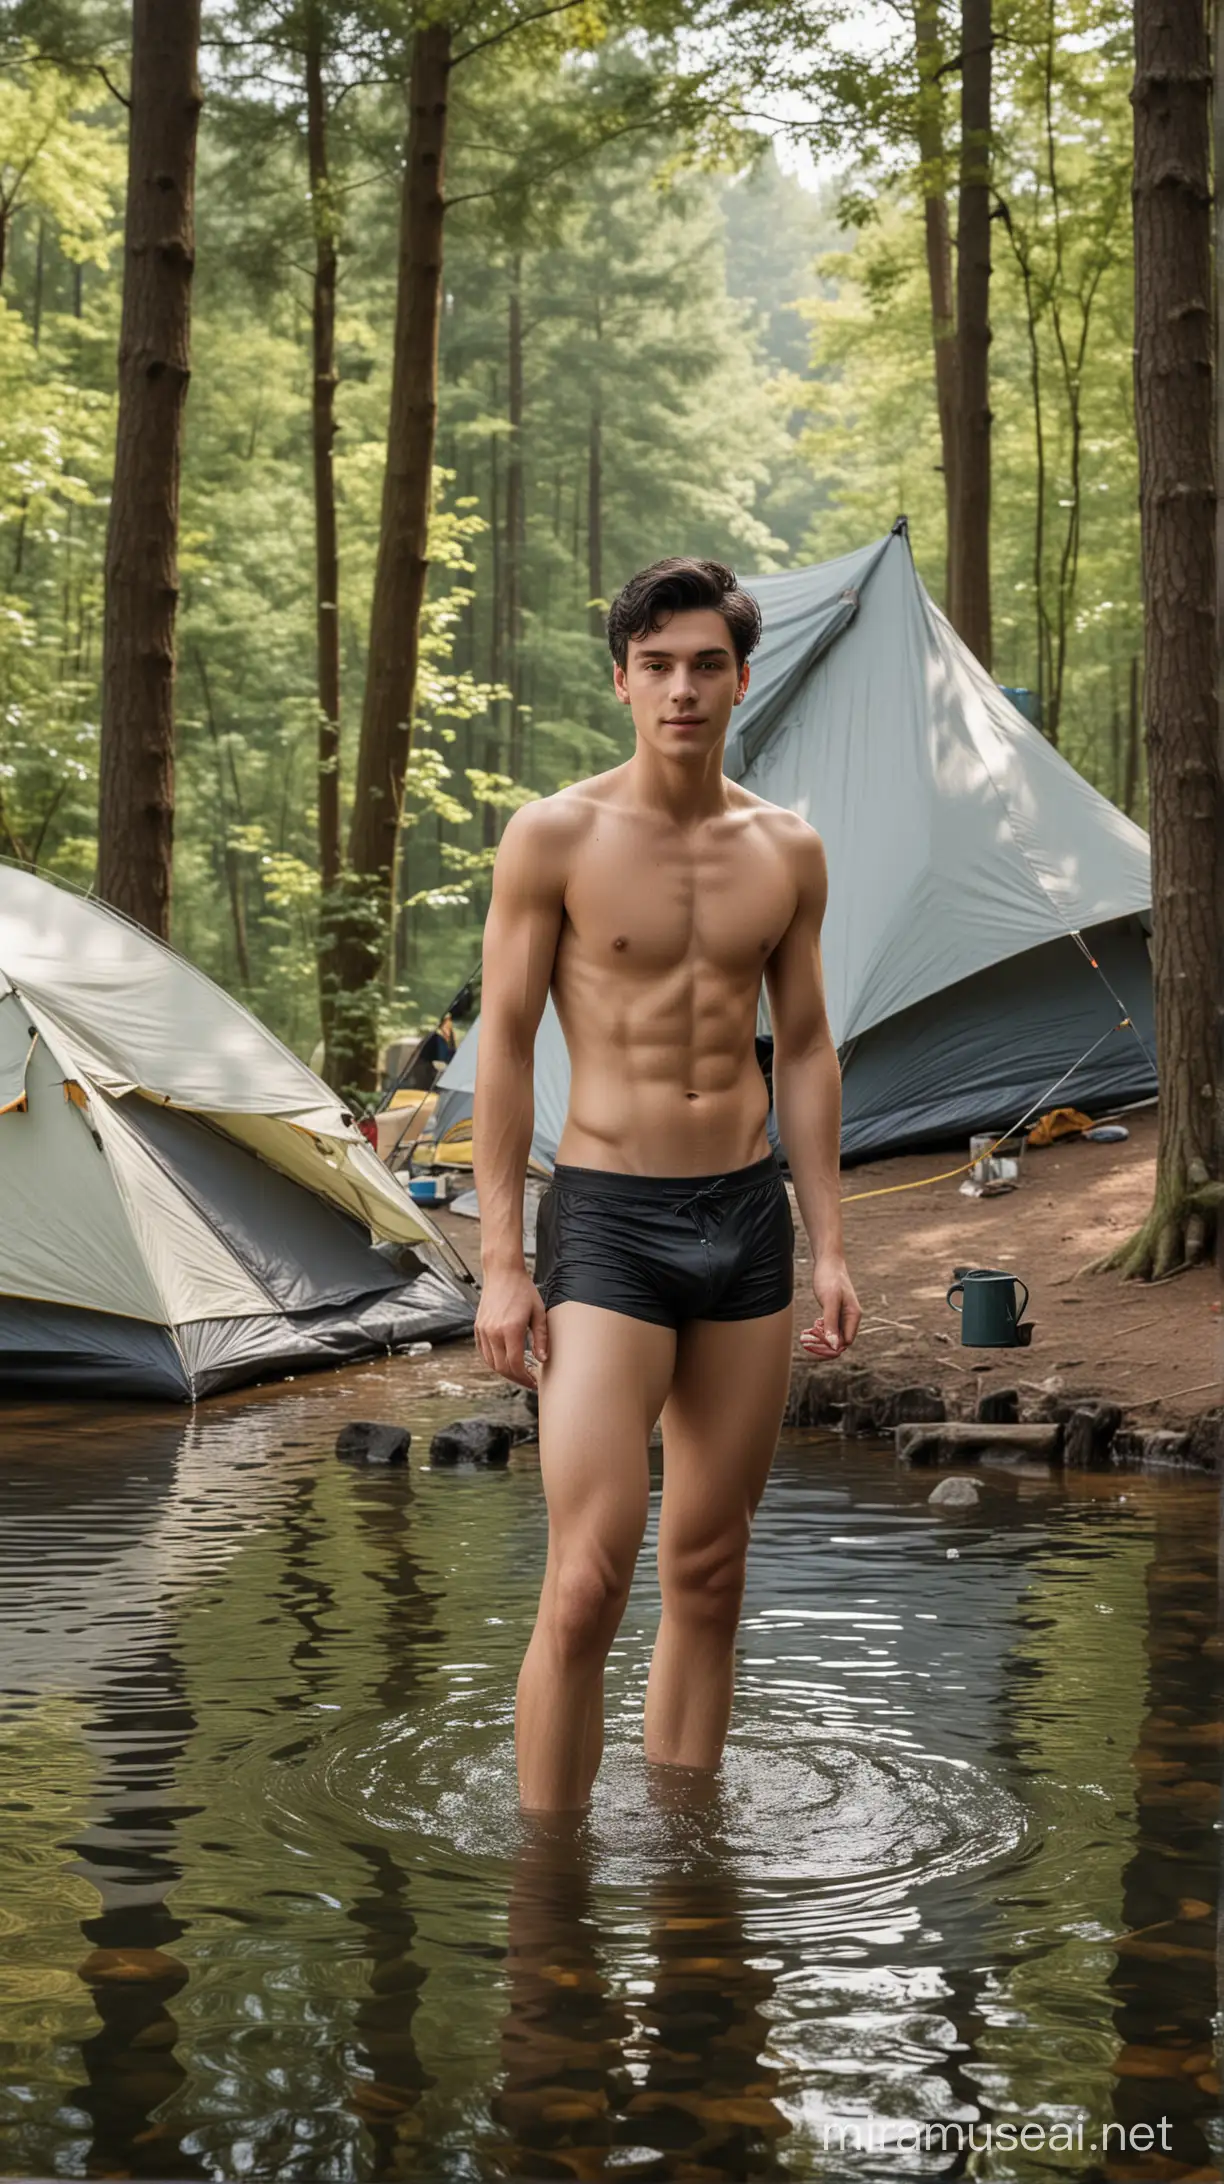 foto seorang pemuda tampan usia 18 tahun, berambut hitam pendek, bercelana dalam segitiga, sedang mandi di sebuah danau, ada perlengkapan minum teh, di sekelilingnya ada tenda kemping, background sebuah hutan yang indah, foto resolusi UHD 64k